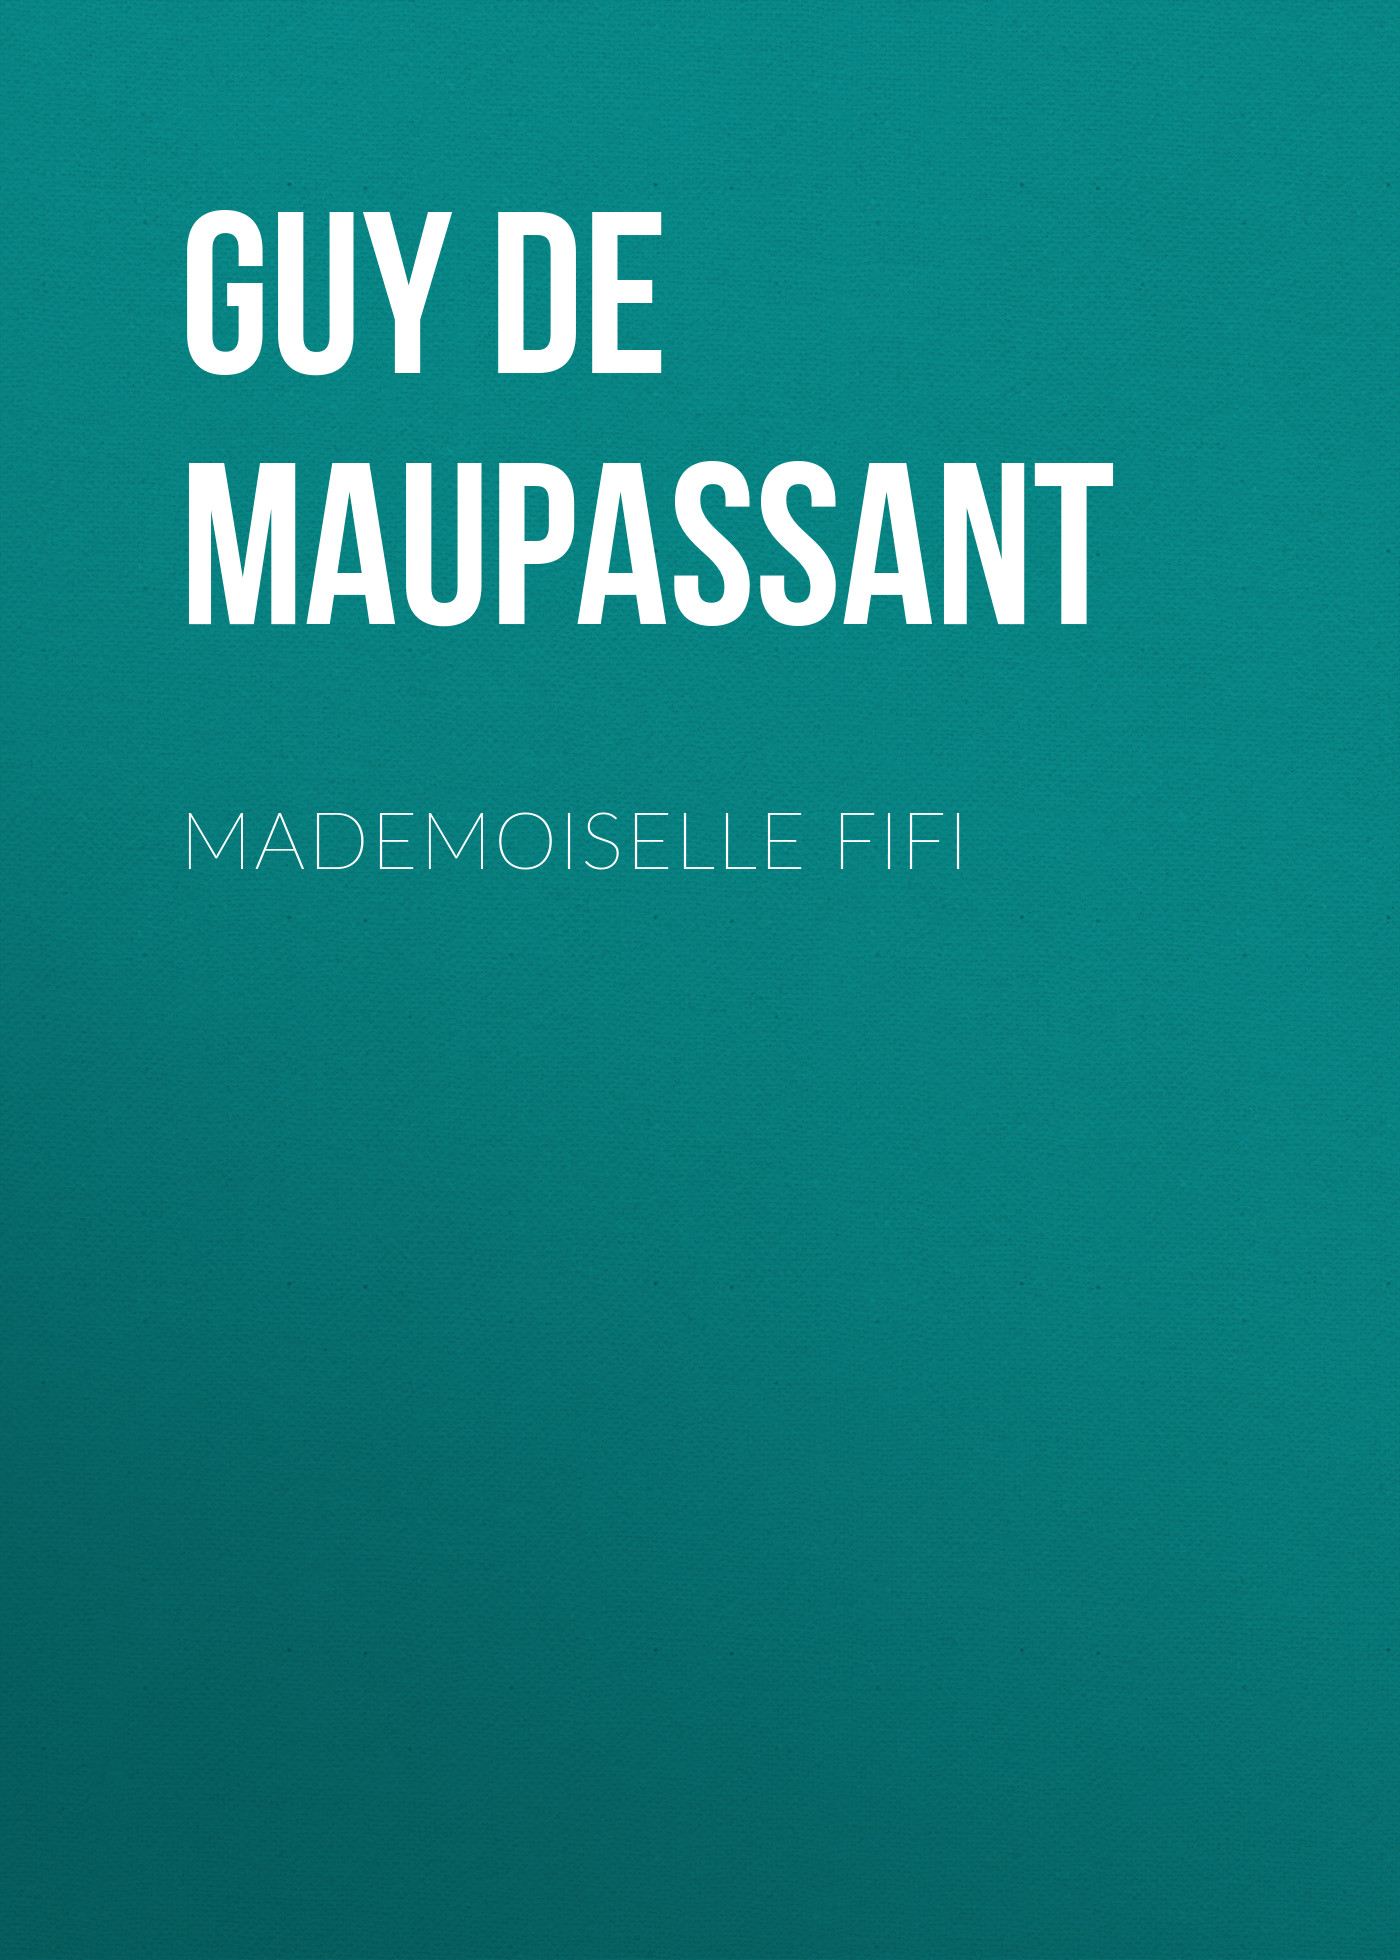 Книга Mademoiselle Fifi из серии , созданная Guy Maupassant, может относится к жанру Литература 19 века, Зарубежная старинная литература, Зарубежная классика. Стоимость электронной книги Mademoiselle Fifi с идентификатором 25292971 составляет 0 руб.